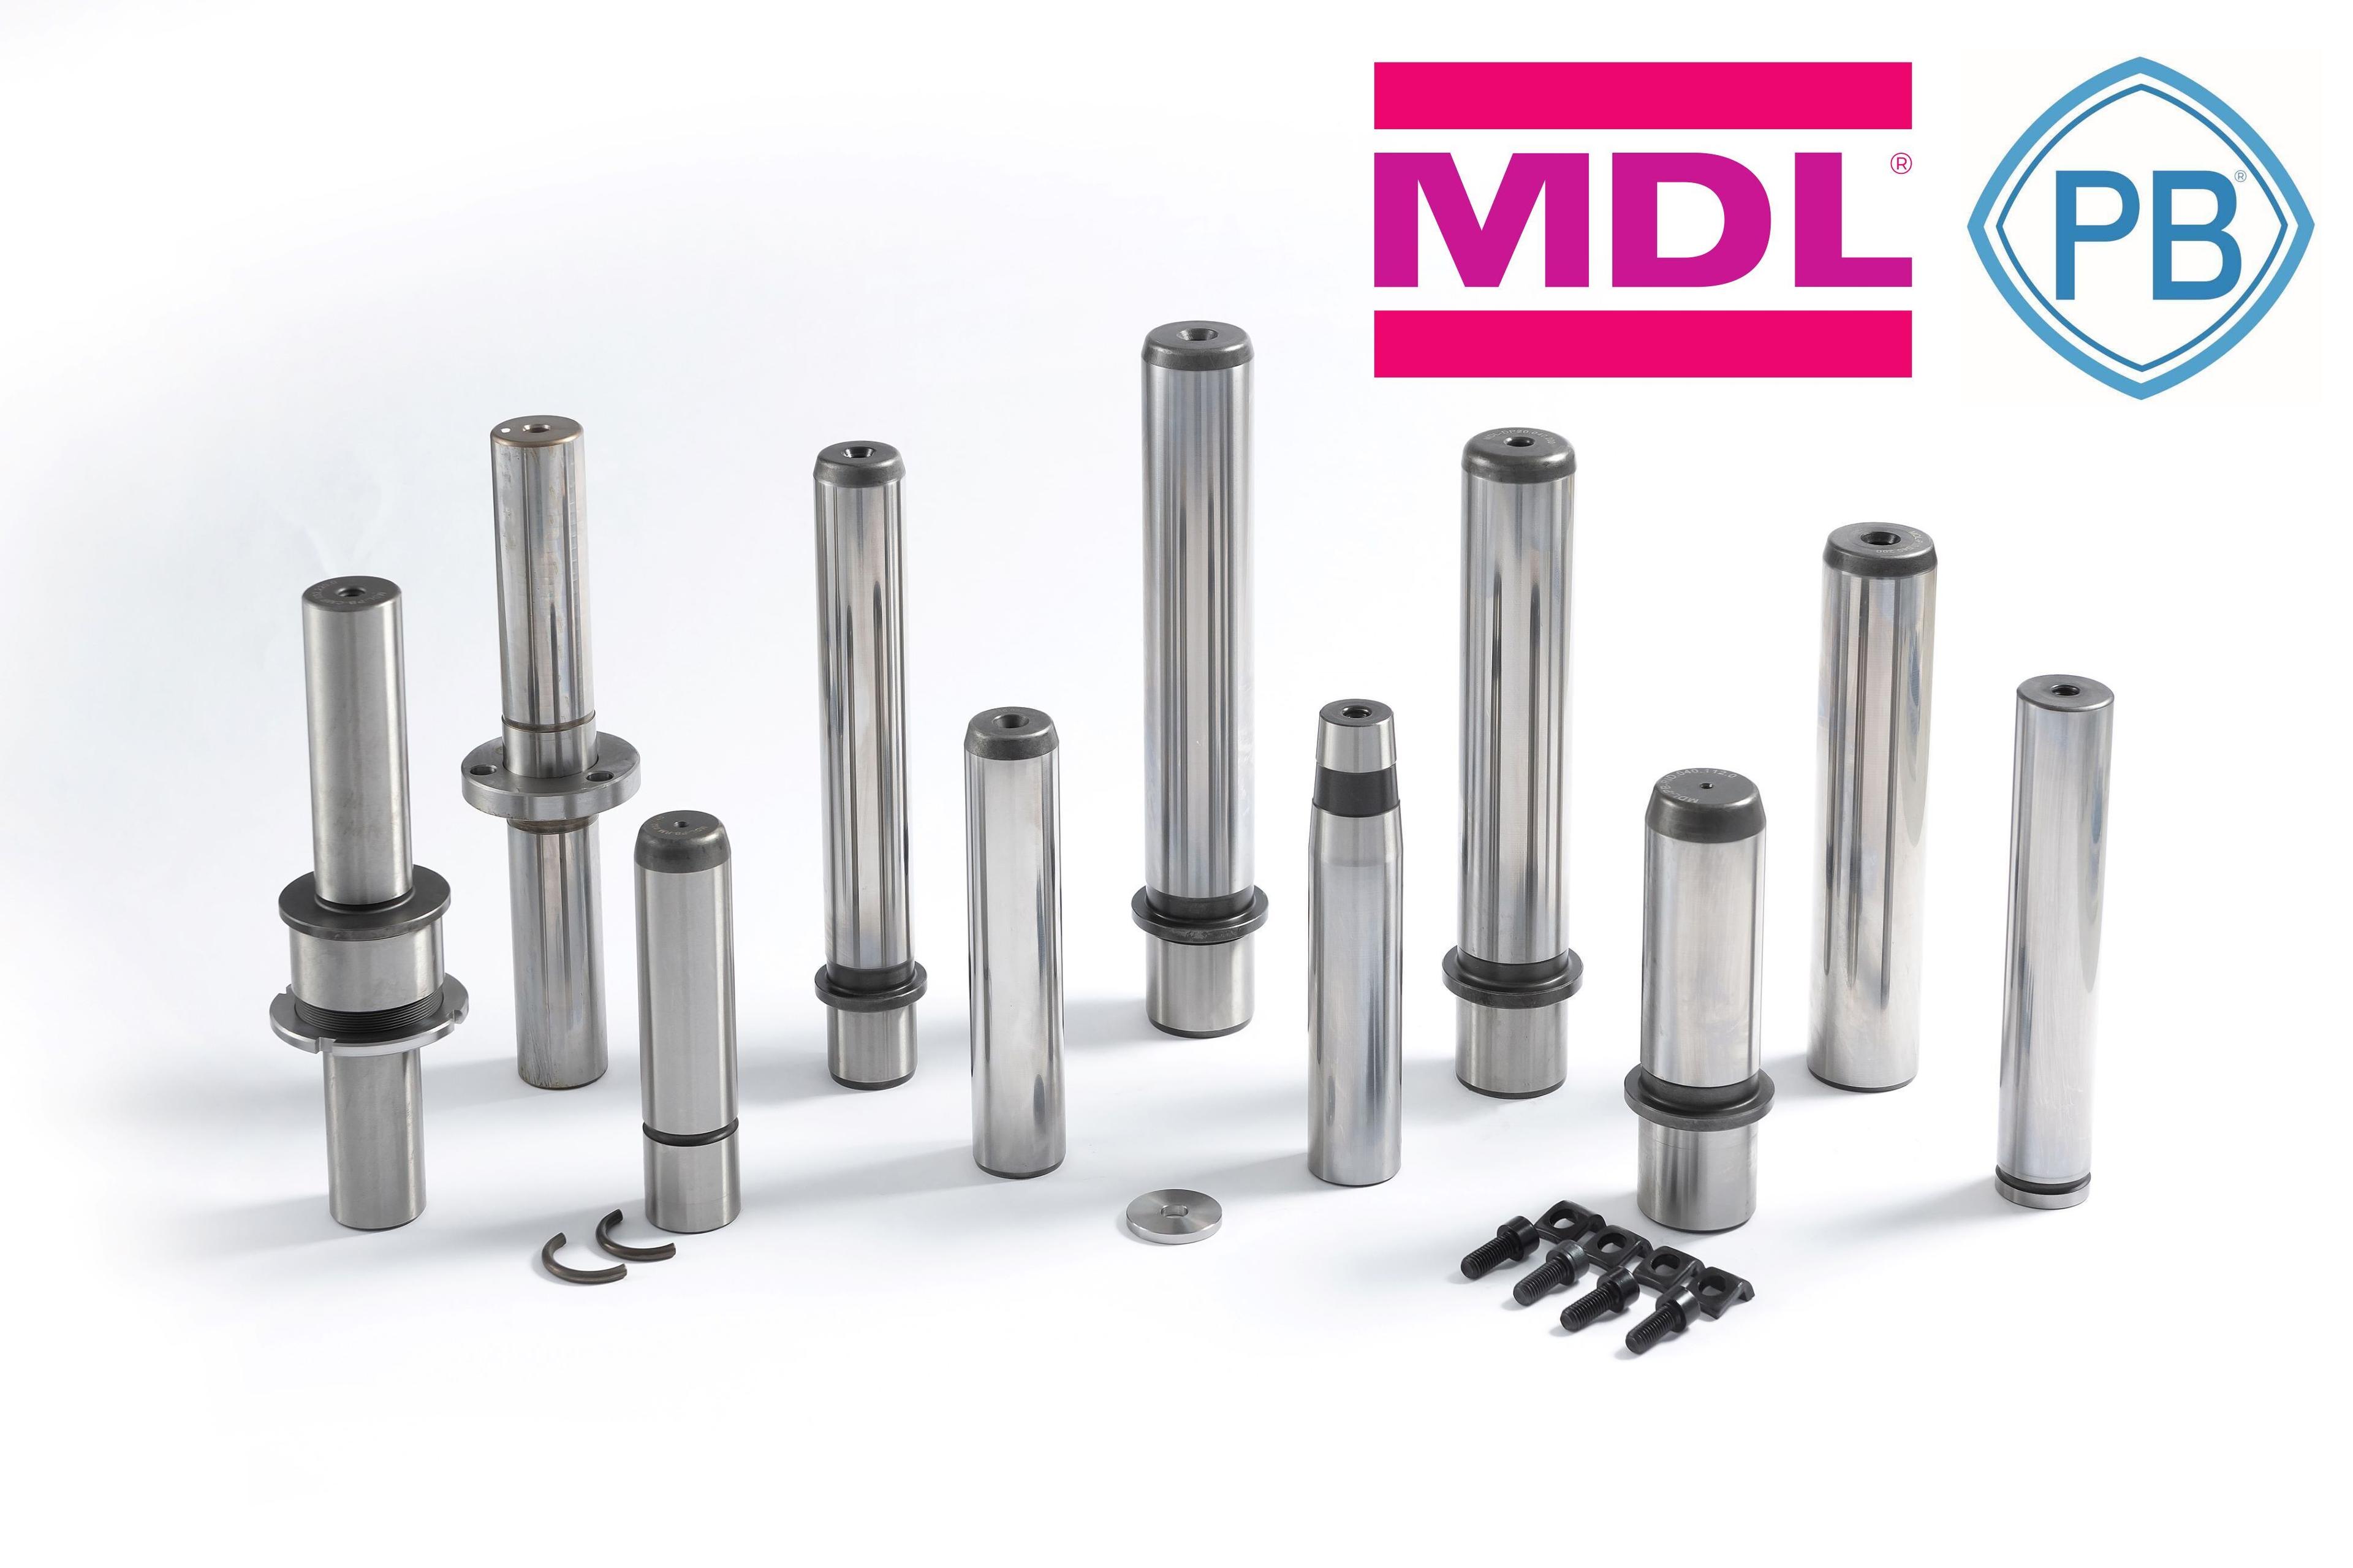 Les colonnes de guidage pour la conception de systèmes de guidage lors de la construction d'outillages de presse et d'outils de découpe des marques déposées MDL et Porter Besson sont disponibles en stock chez leur fabricant AMDL.